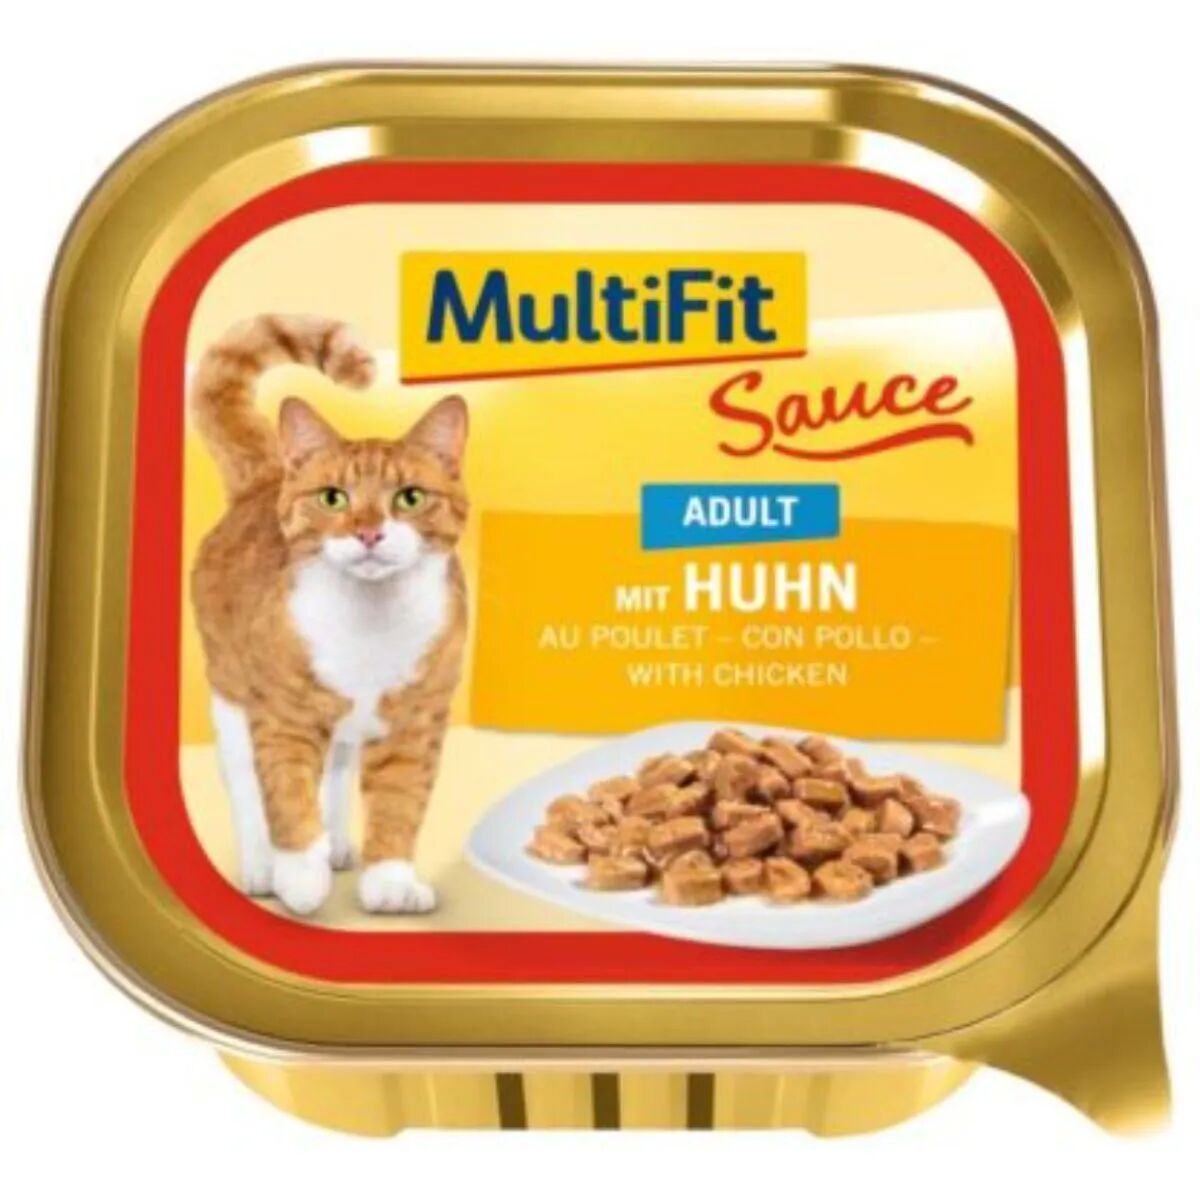 MULTIFIT Sauce Cat Vaschetta Multipack 16x100G POLLO